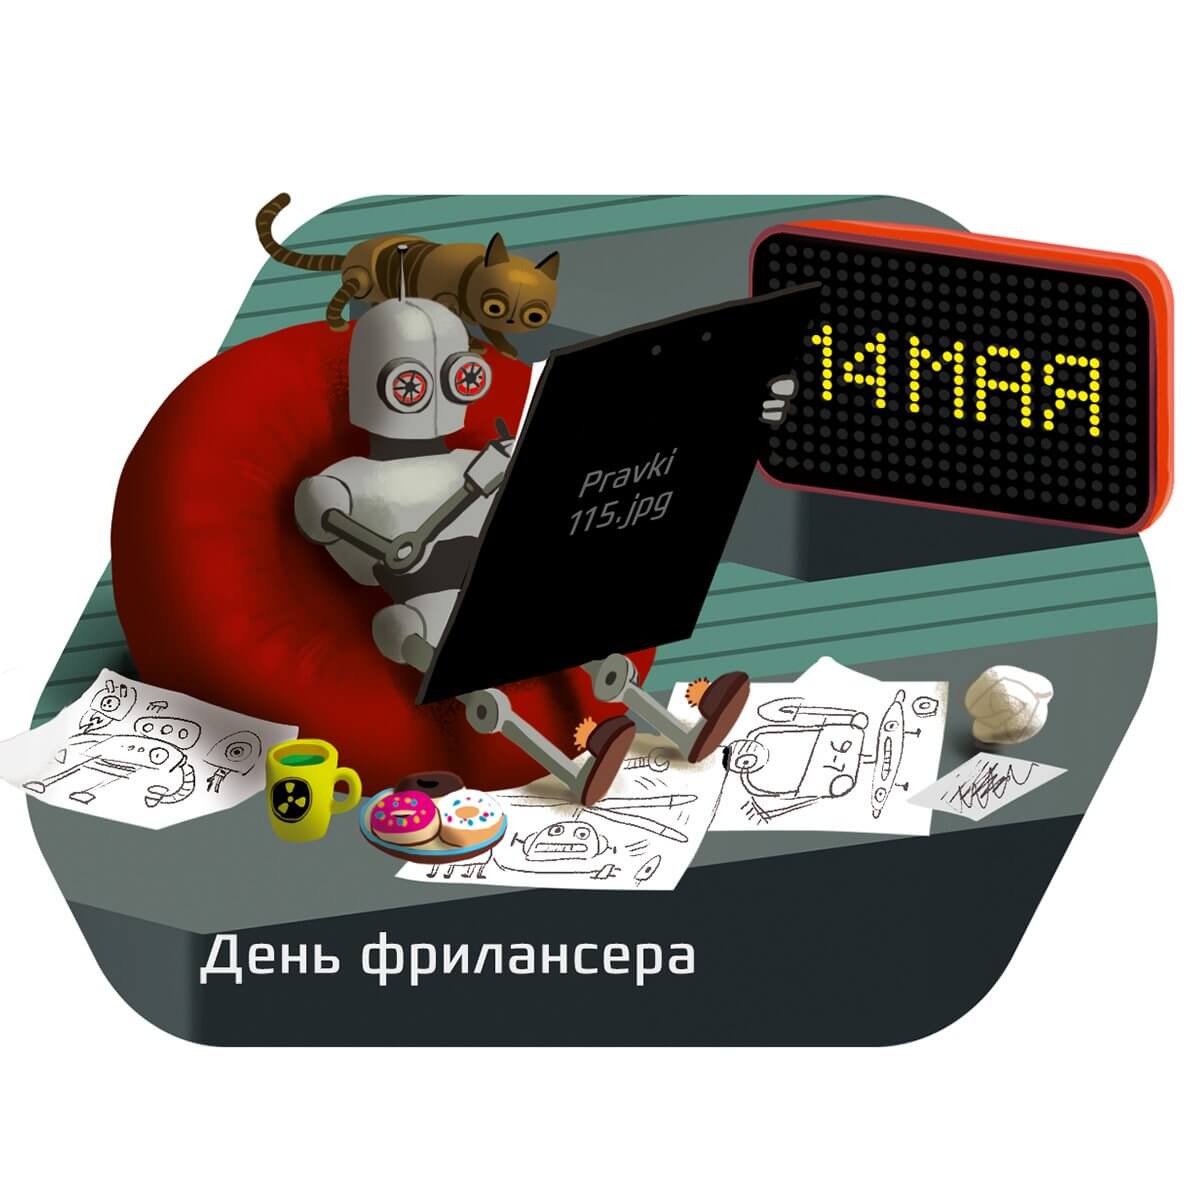 День фрилансера в России 14 мая, картинки, открытки, гифки